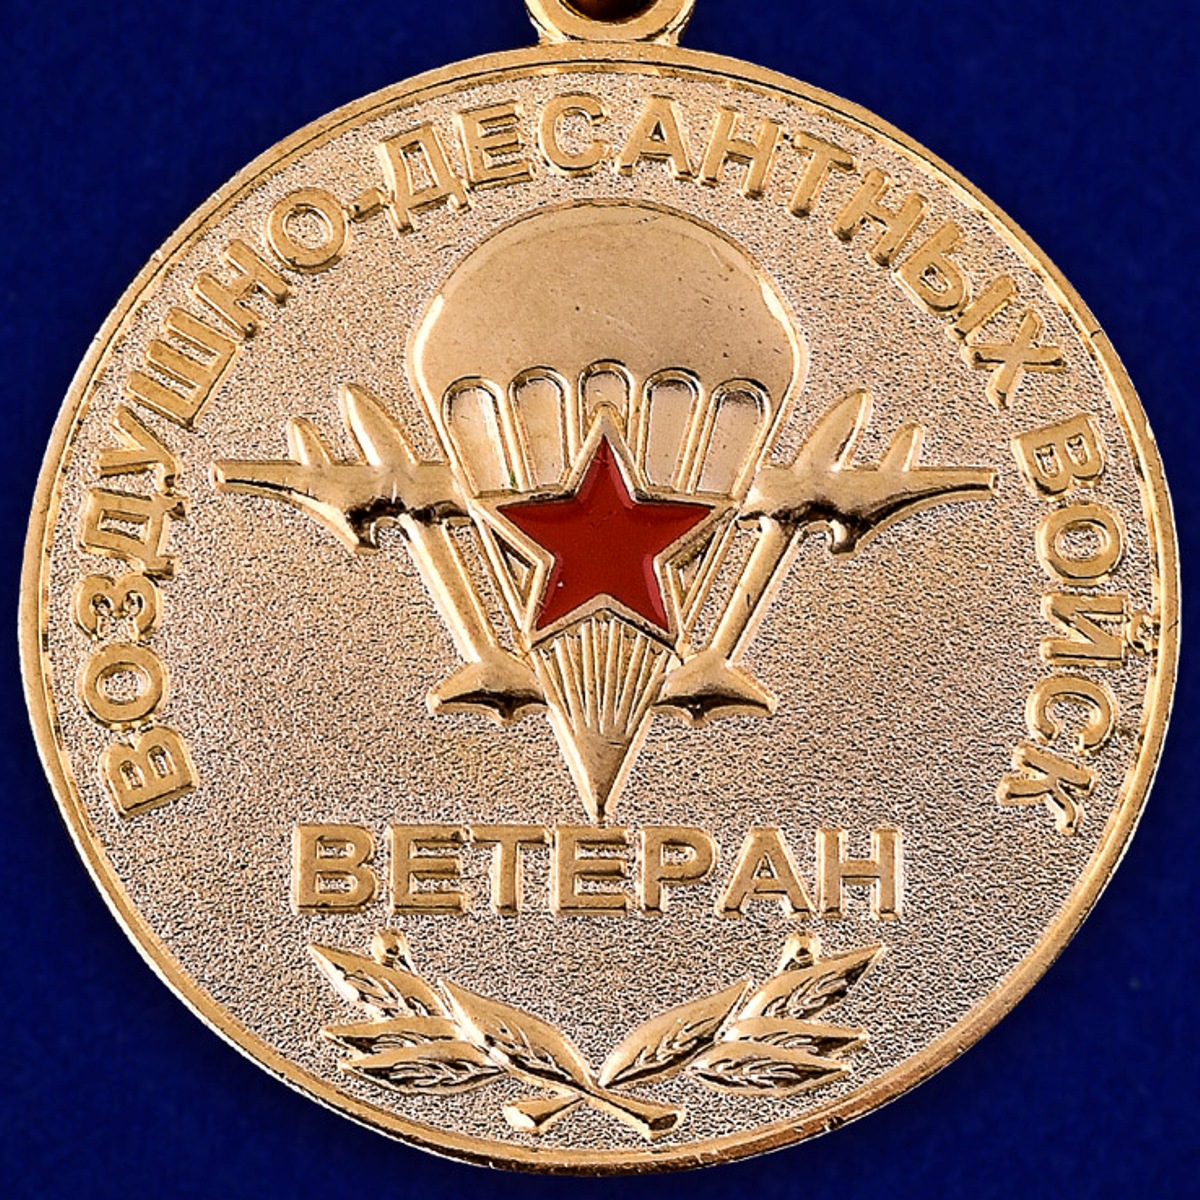 Медаль "Ветеран ВДВ" в бархатистом футляре из флока 